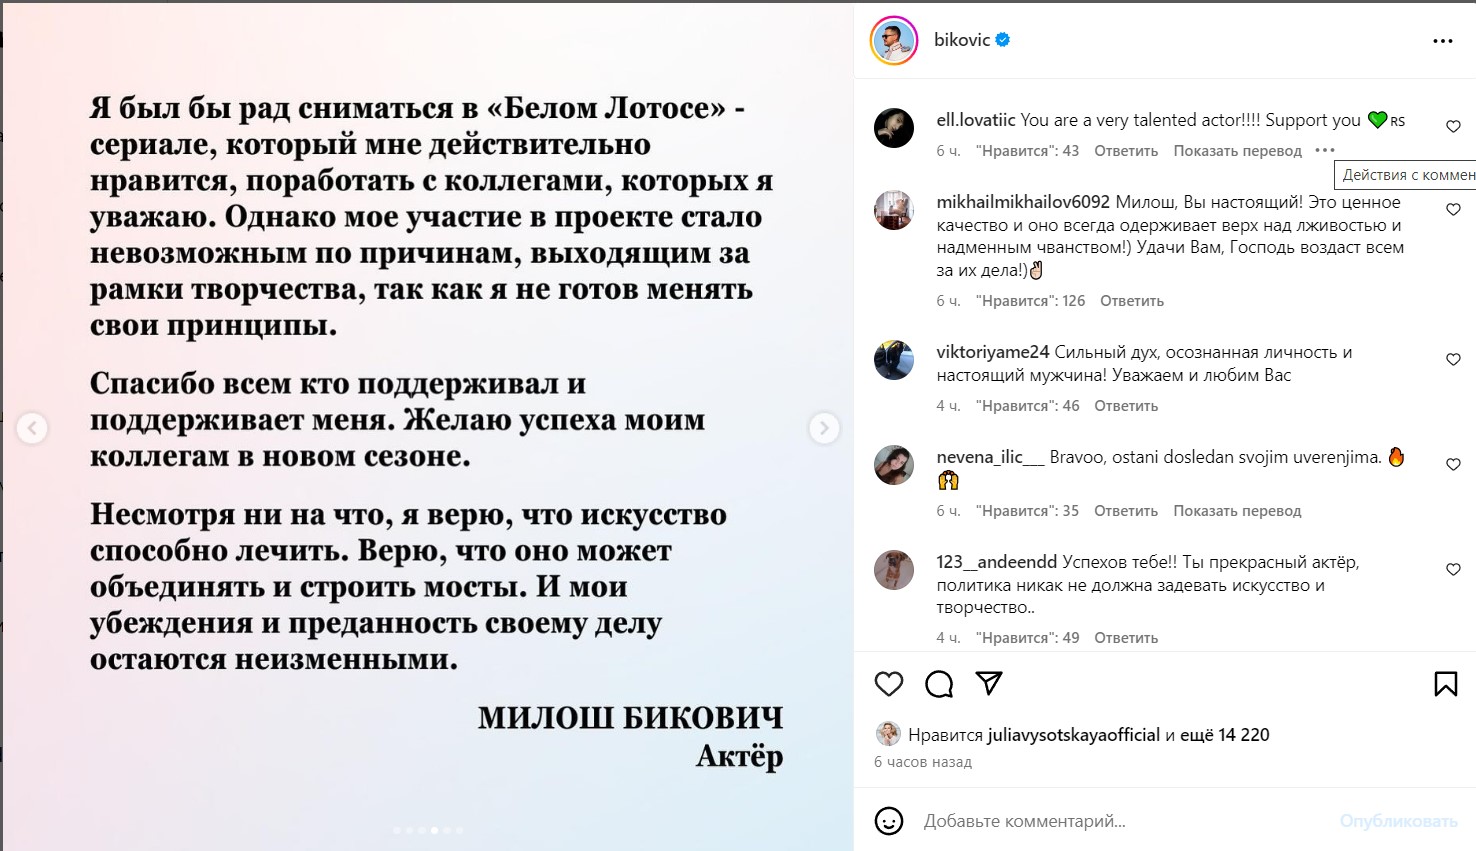 «Не готов менять свои принципы»: Высоцкая поддержала потерявшего работу из-за украинцев актера Биковича